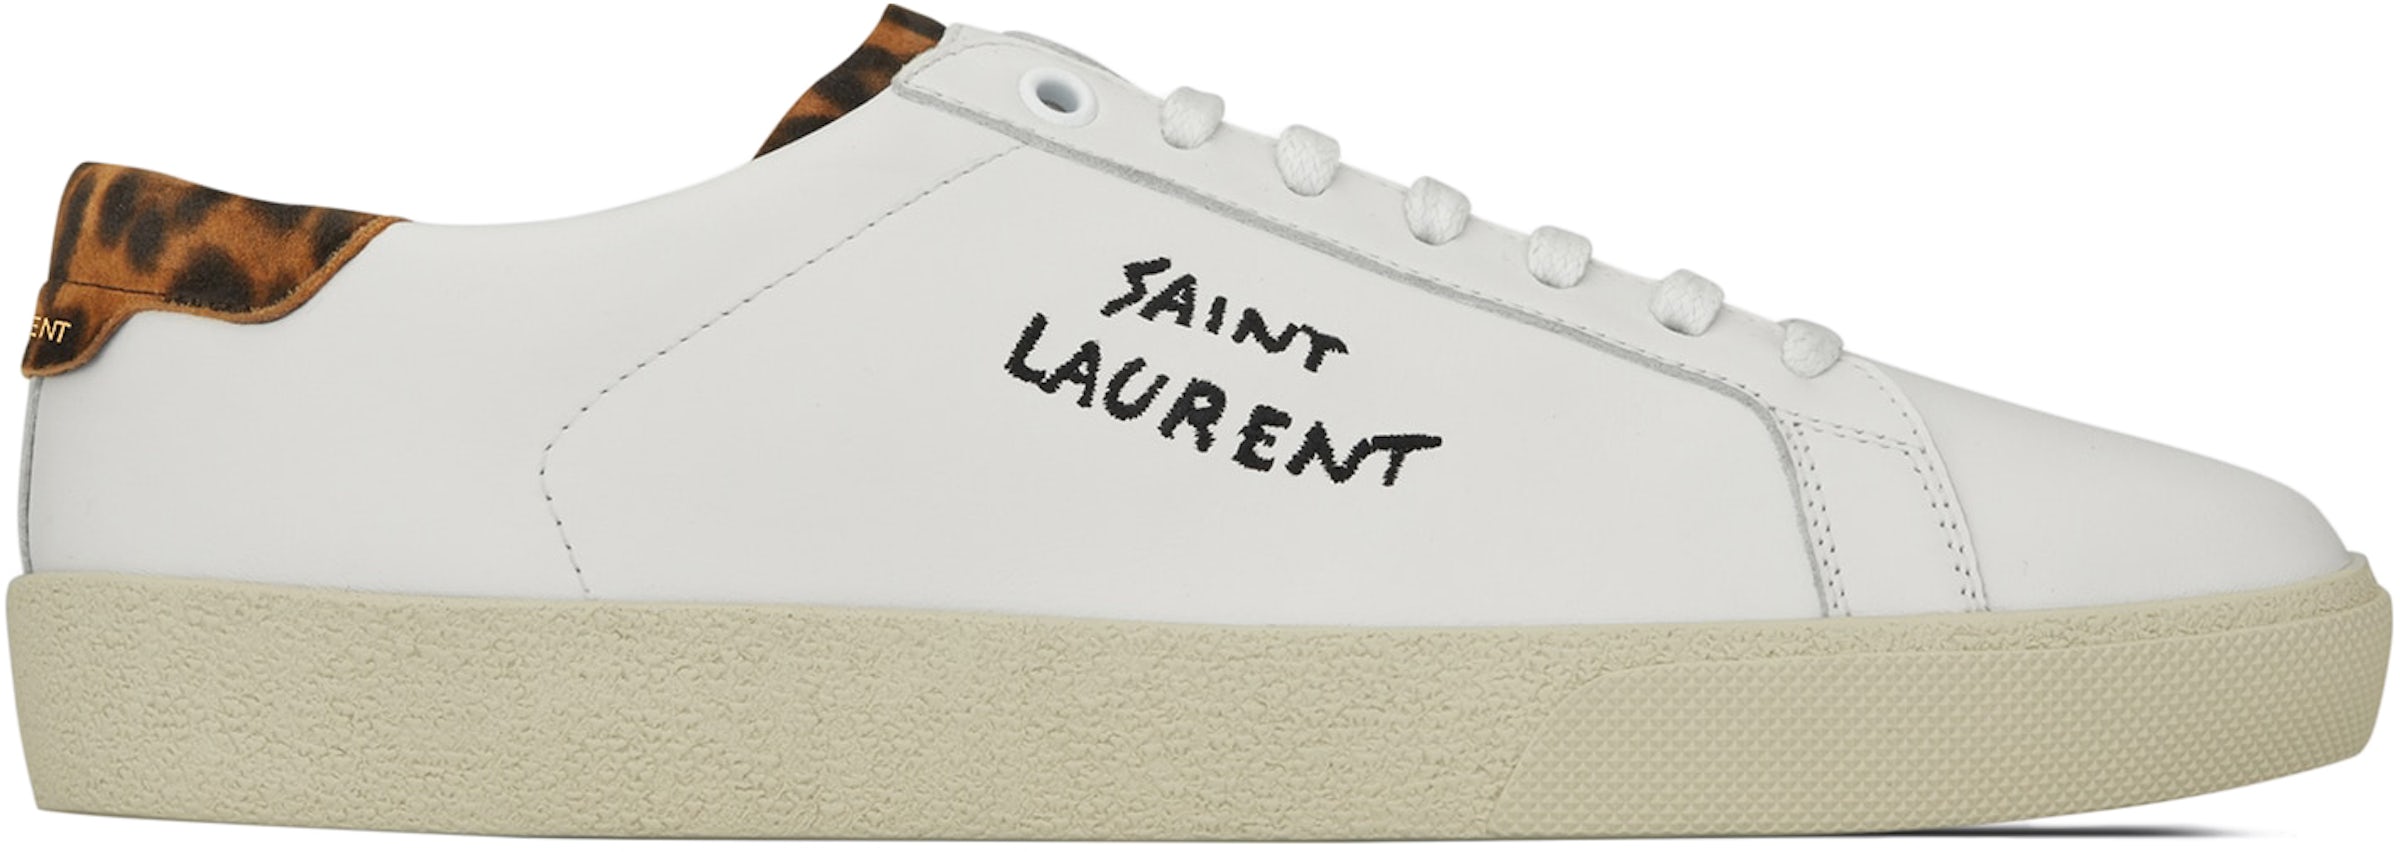 Buy Saint Laurent Accessories - StockX